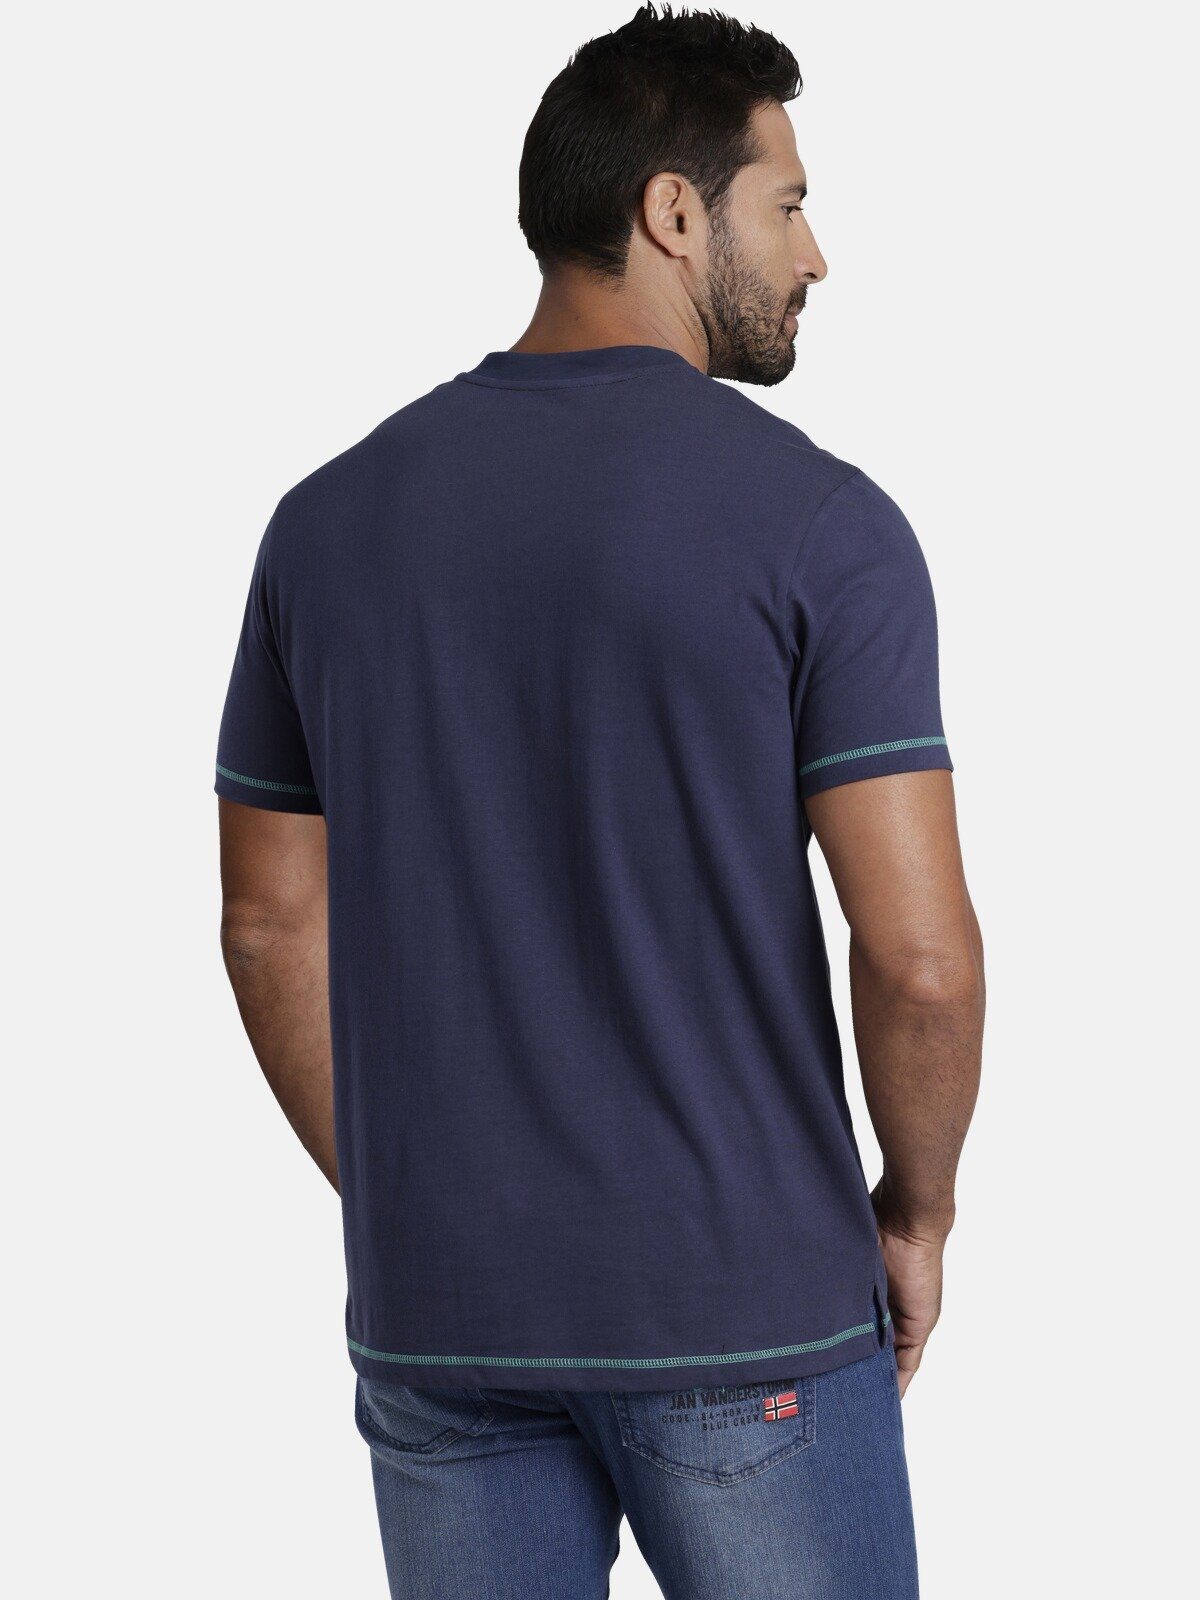 Jan Vanderstorm T-Shirt NORDGER aus dunkelblau Baumwolle reiner